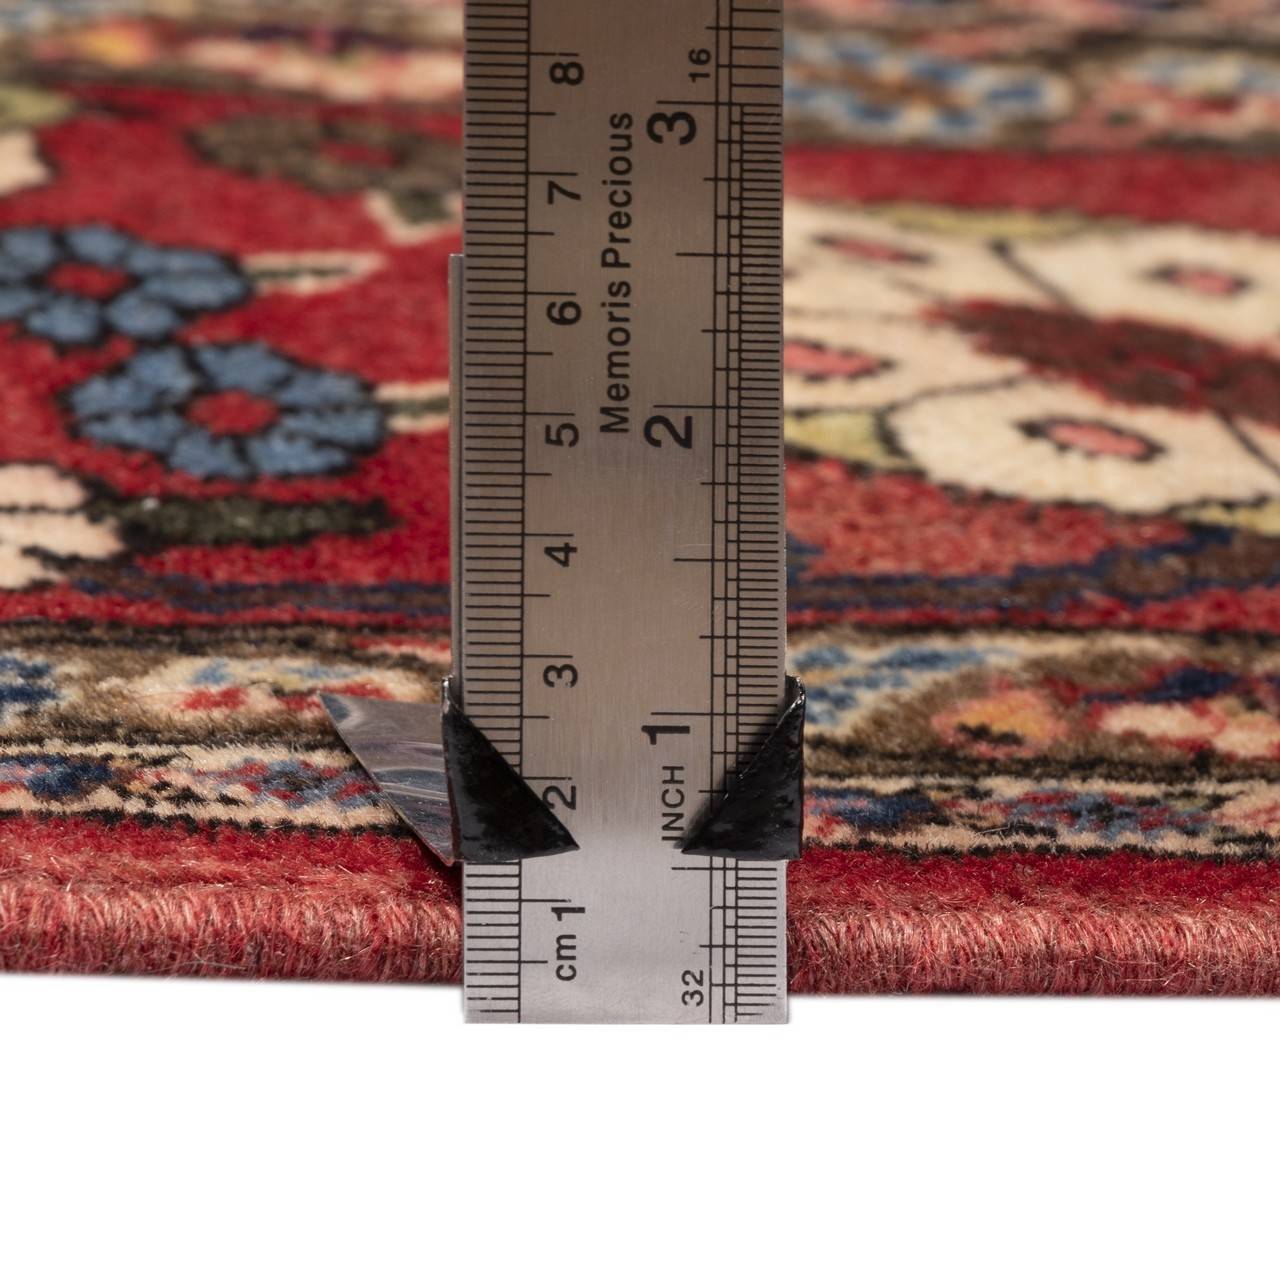 فرش دستباف قدیمی سه متری ورامین کد 126043